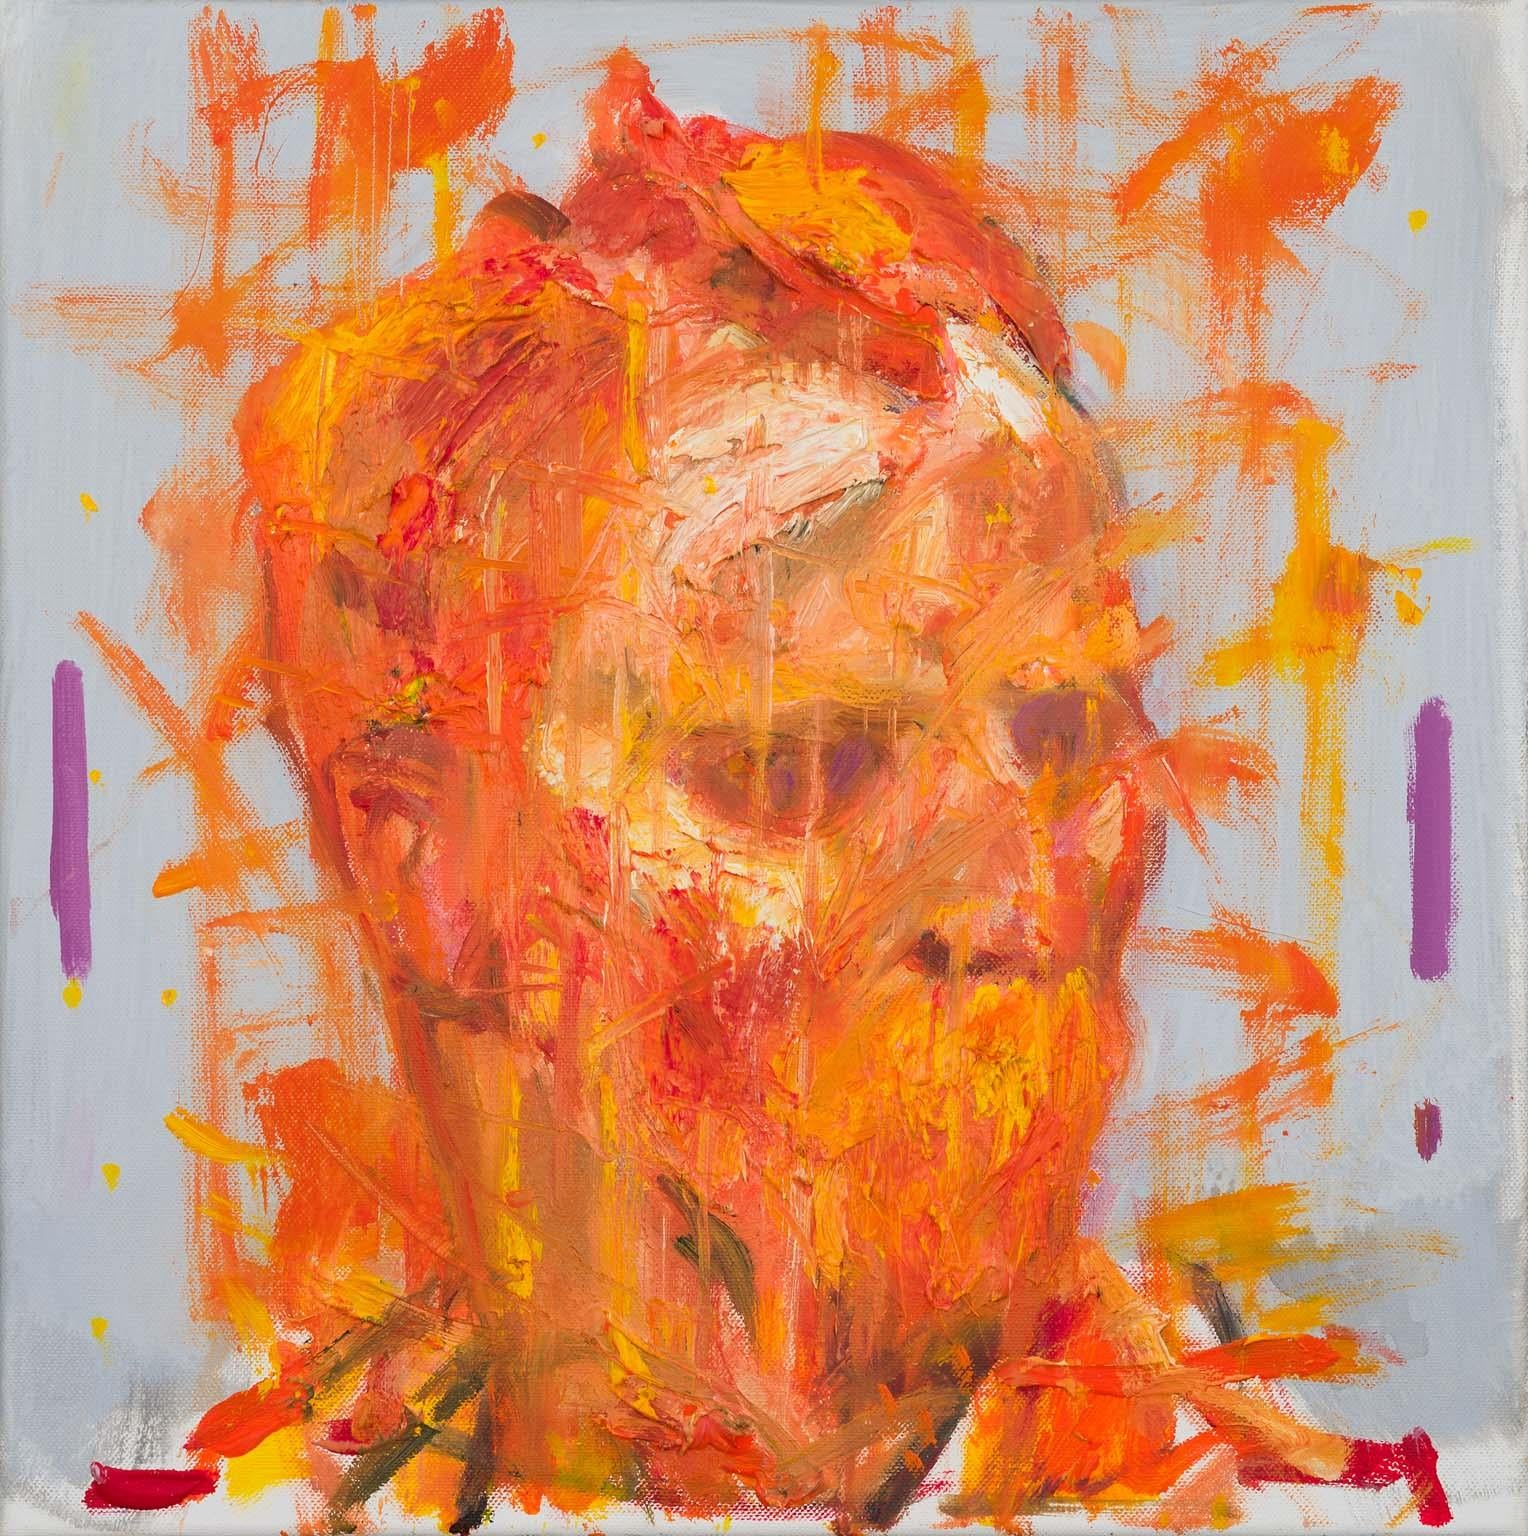 Portrait Painting Milan Markovich - Orange Sun - huile sur toile contemporaine du portrait de l'artiste Vincent Van Gogh